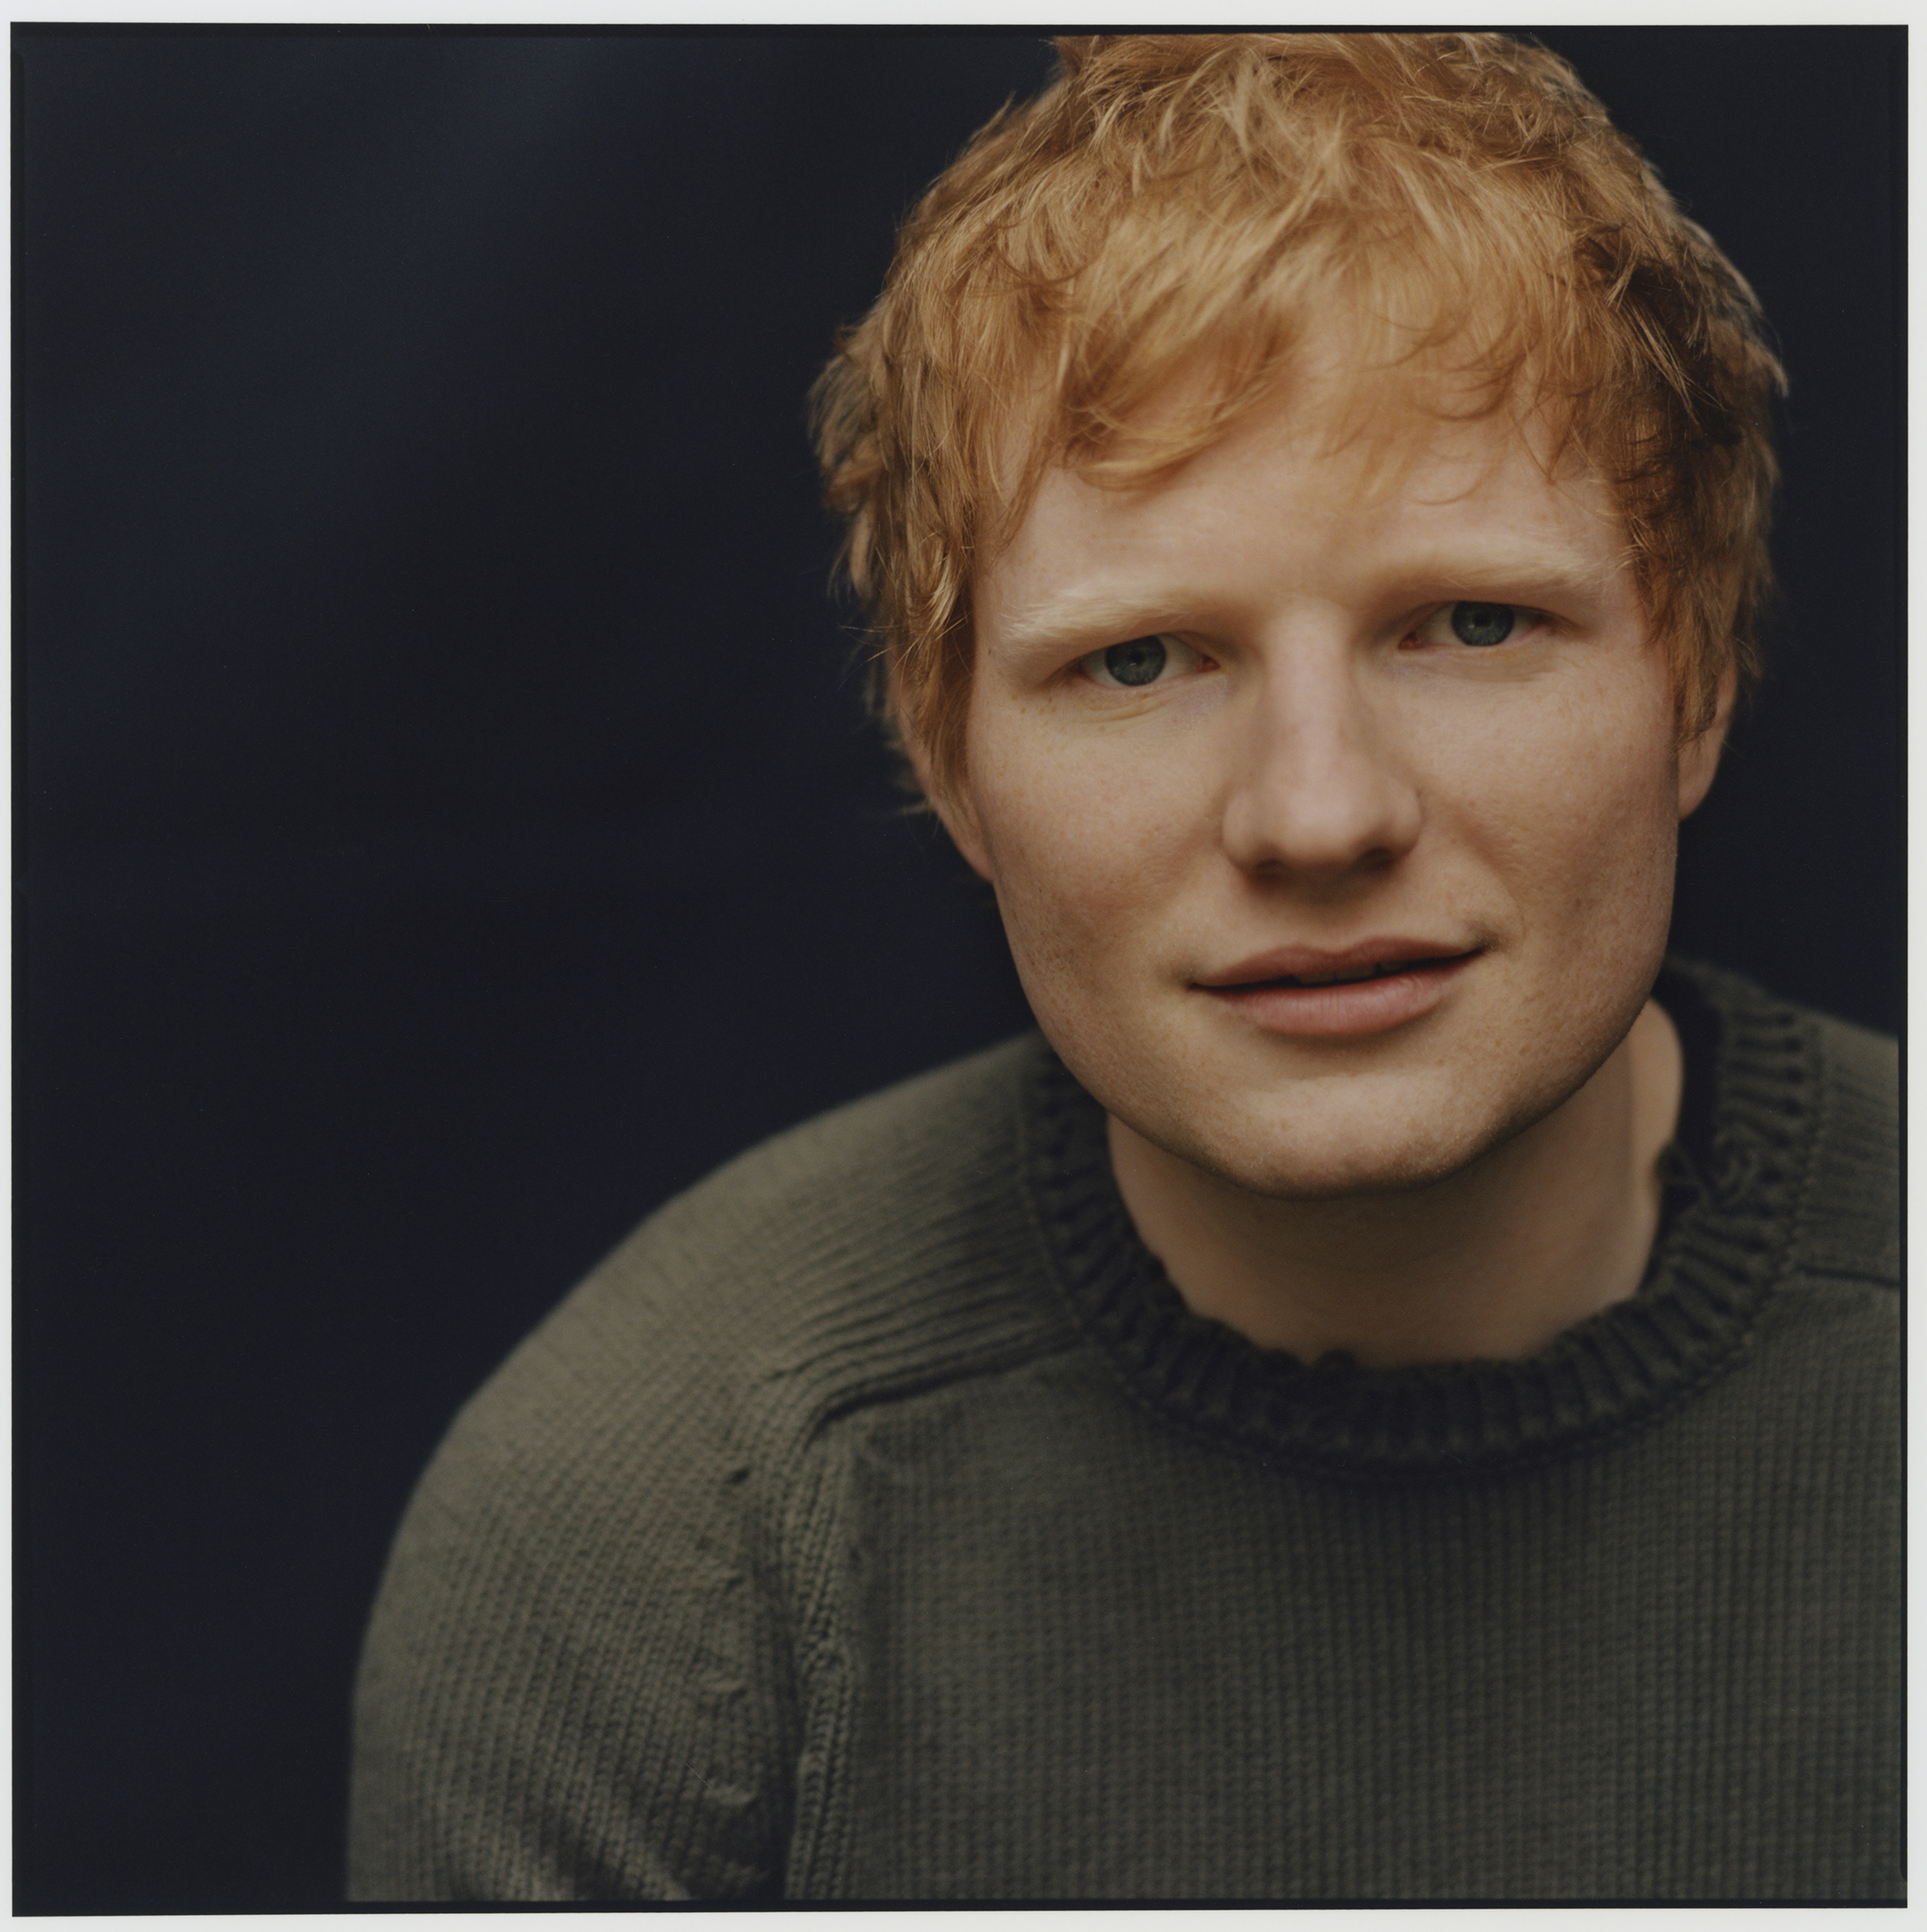 Porträt von Sänger Ed Sheeran